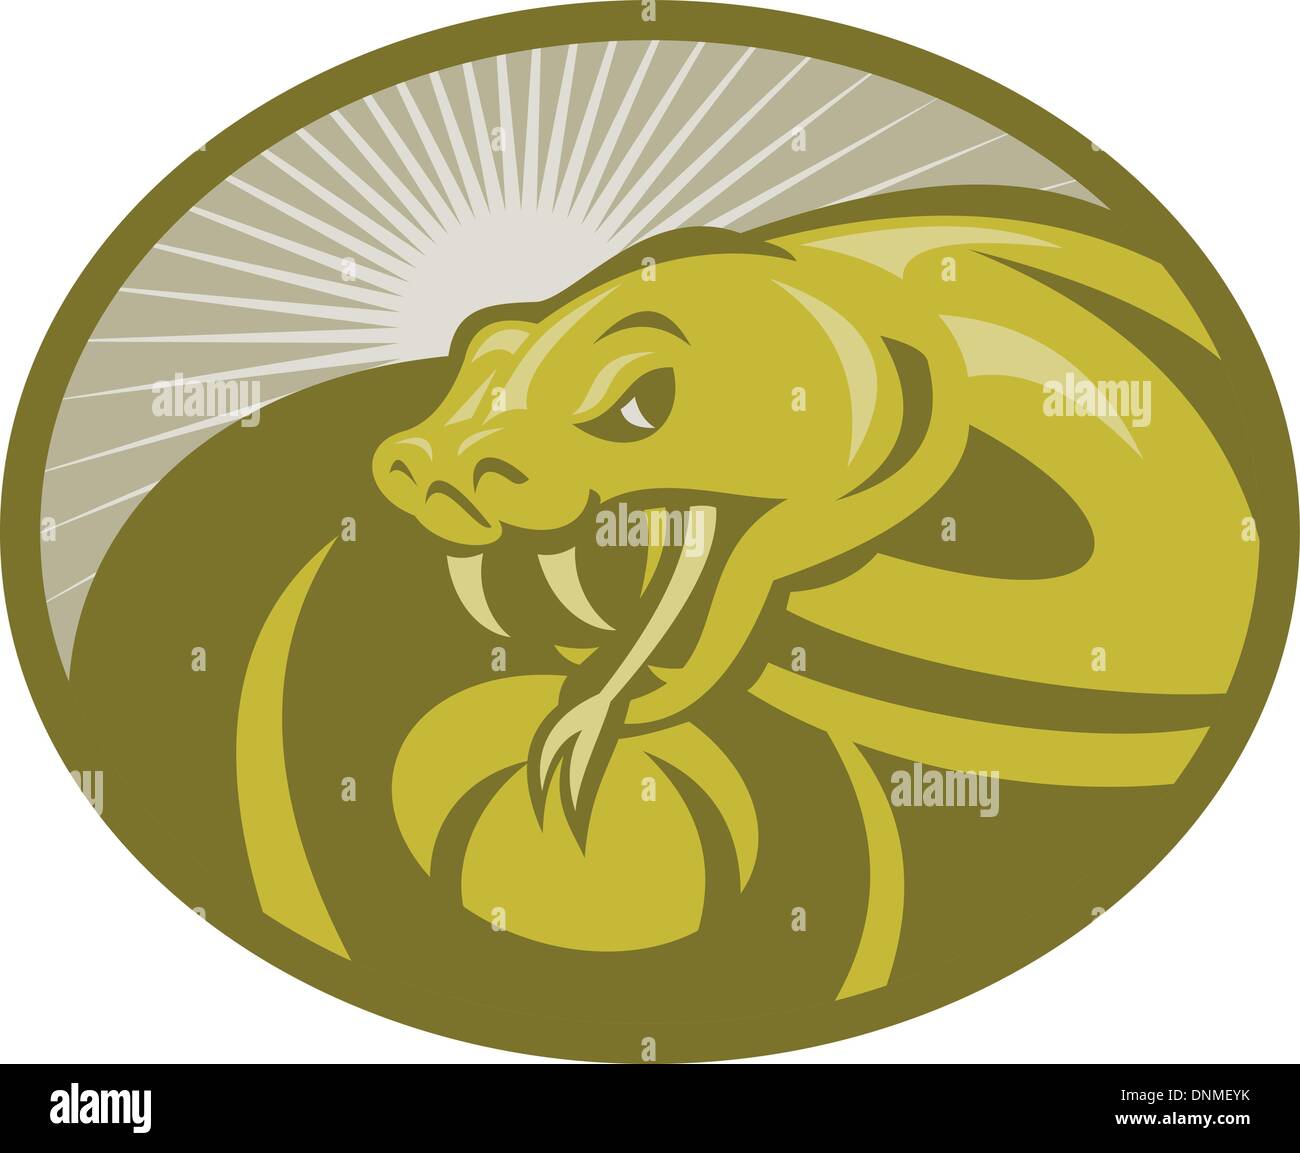 Illustrazione di un serpente arrabbiato viper che riporti le sue zanne con sunburst in background imposta all'interno di un ellisse Illustrazione Vettoriale